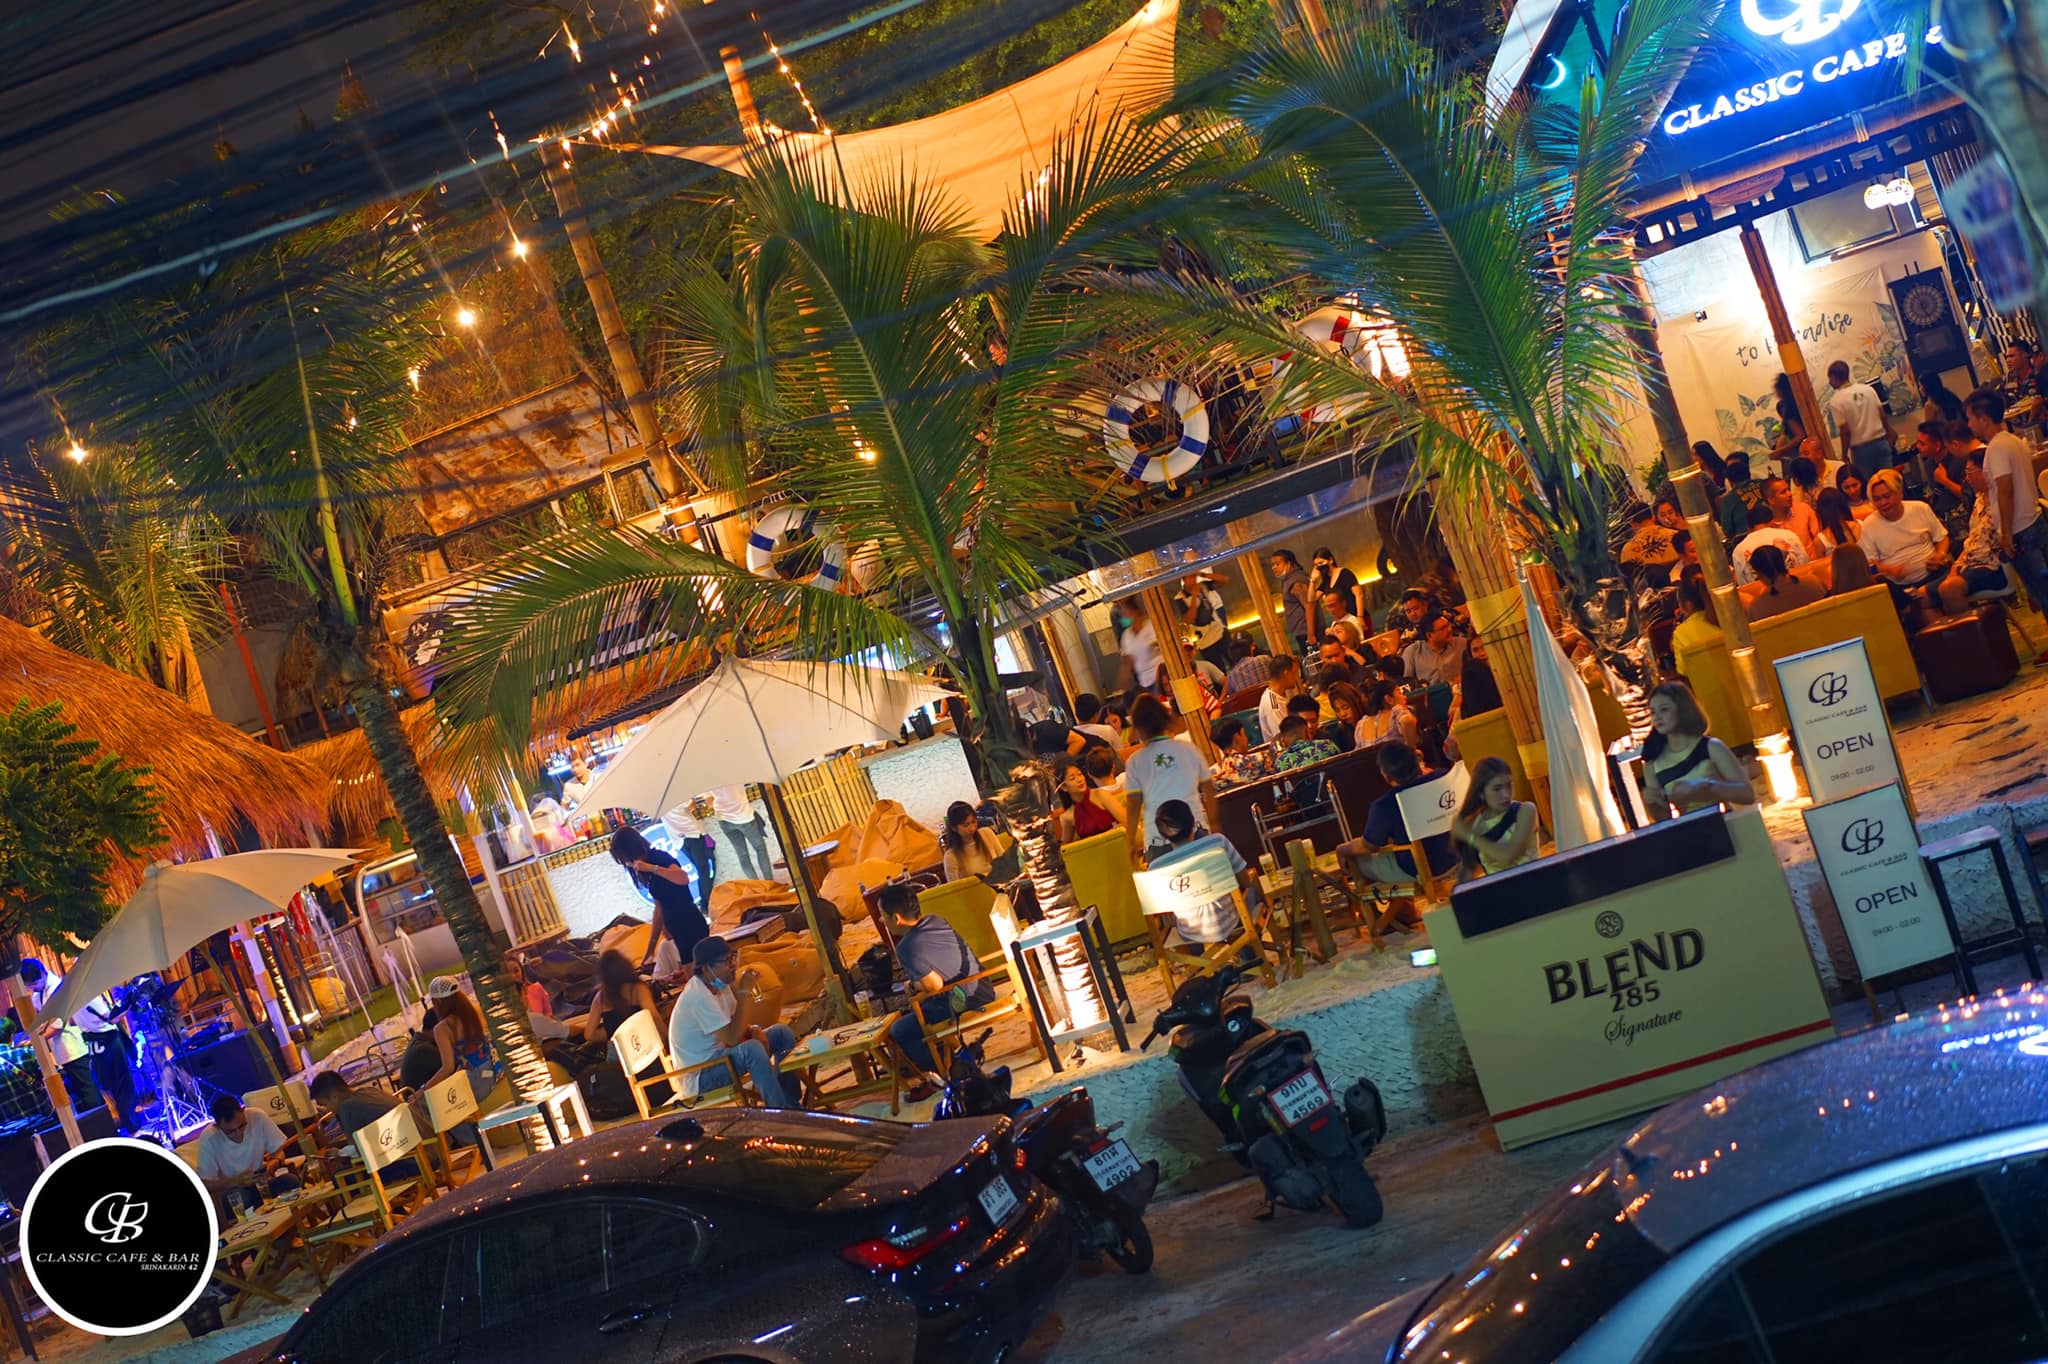 Classic Cafe & Bar Srinakarin (Classic Cafe & Bar Srinakarin) : Bangkok (กรุงเทพมหานคร)